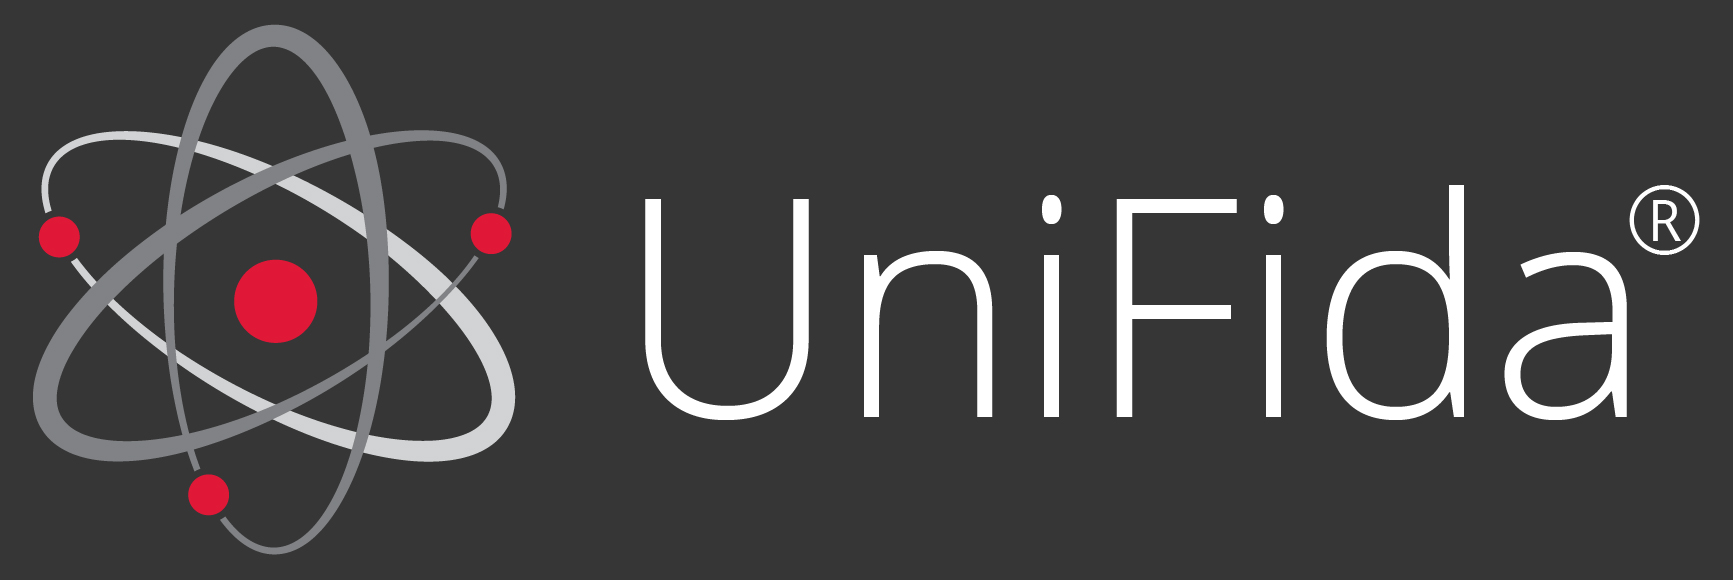 UniFida_dark_R (002).jpg